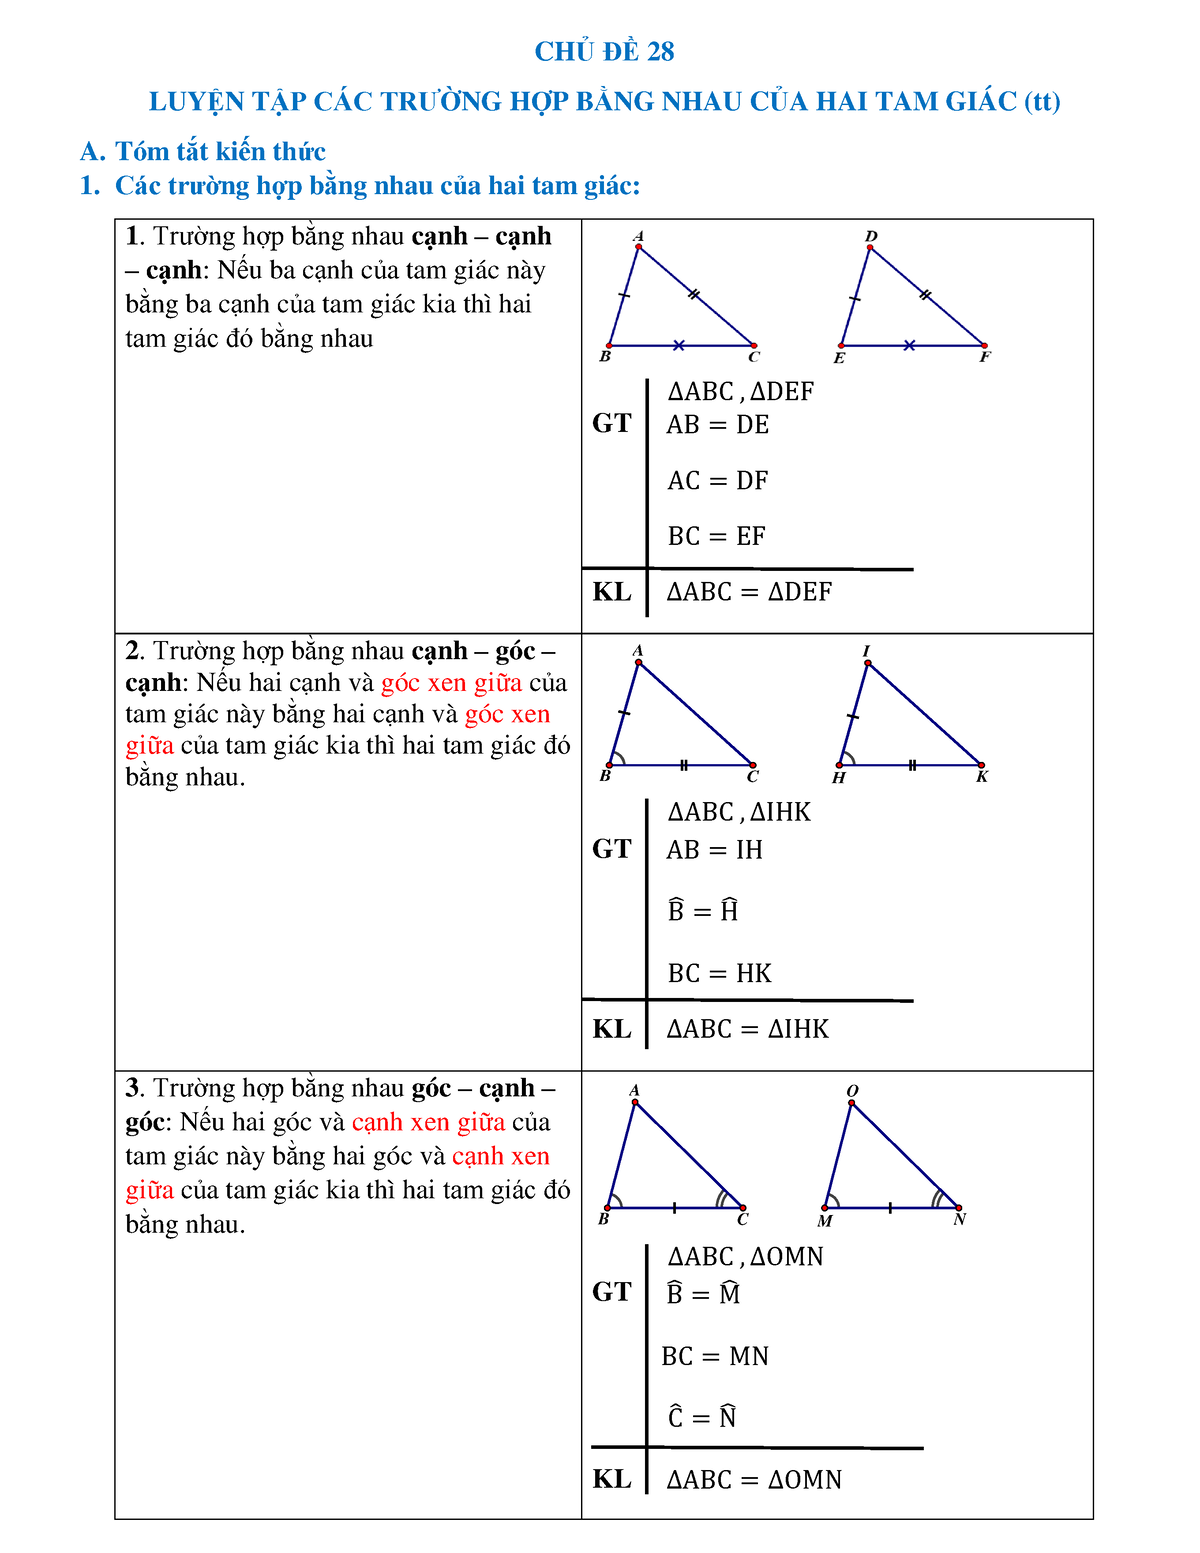 Trường hợp nào khi một cạnh và hai góc của hai tam giác bằng nhau sẽ dẫn đến sự bằng nhau của hai tam giác đó?
